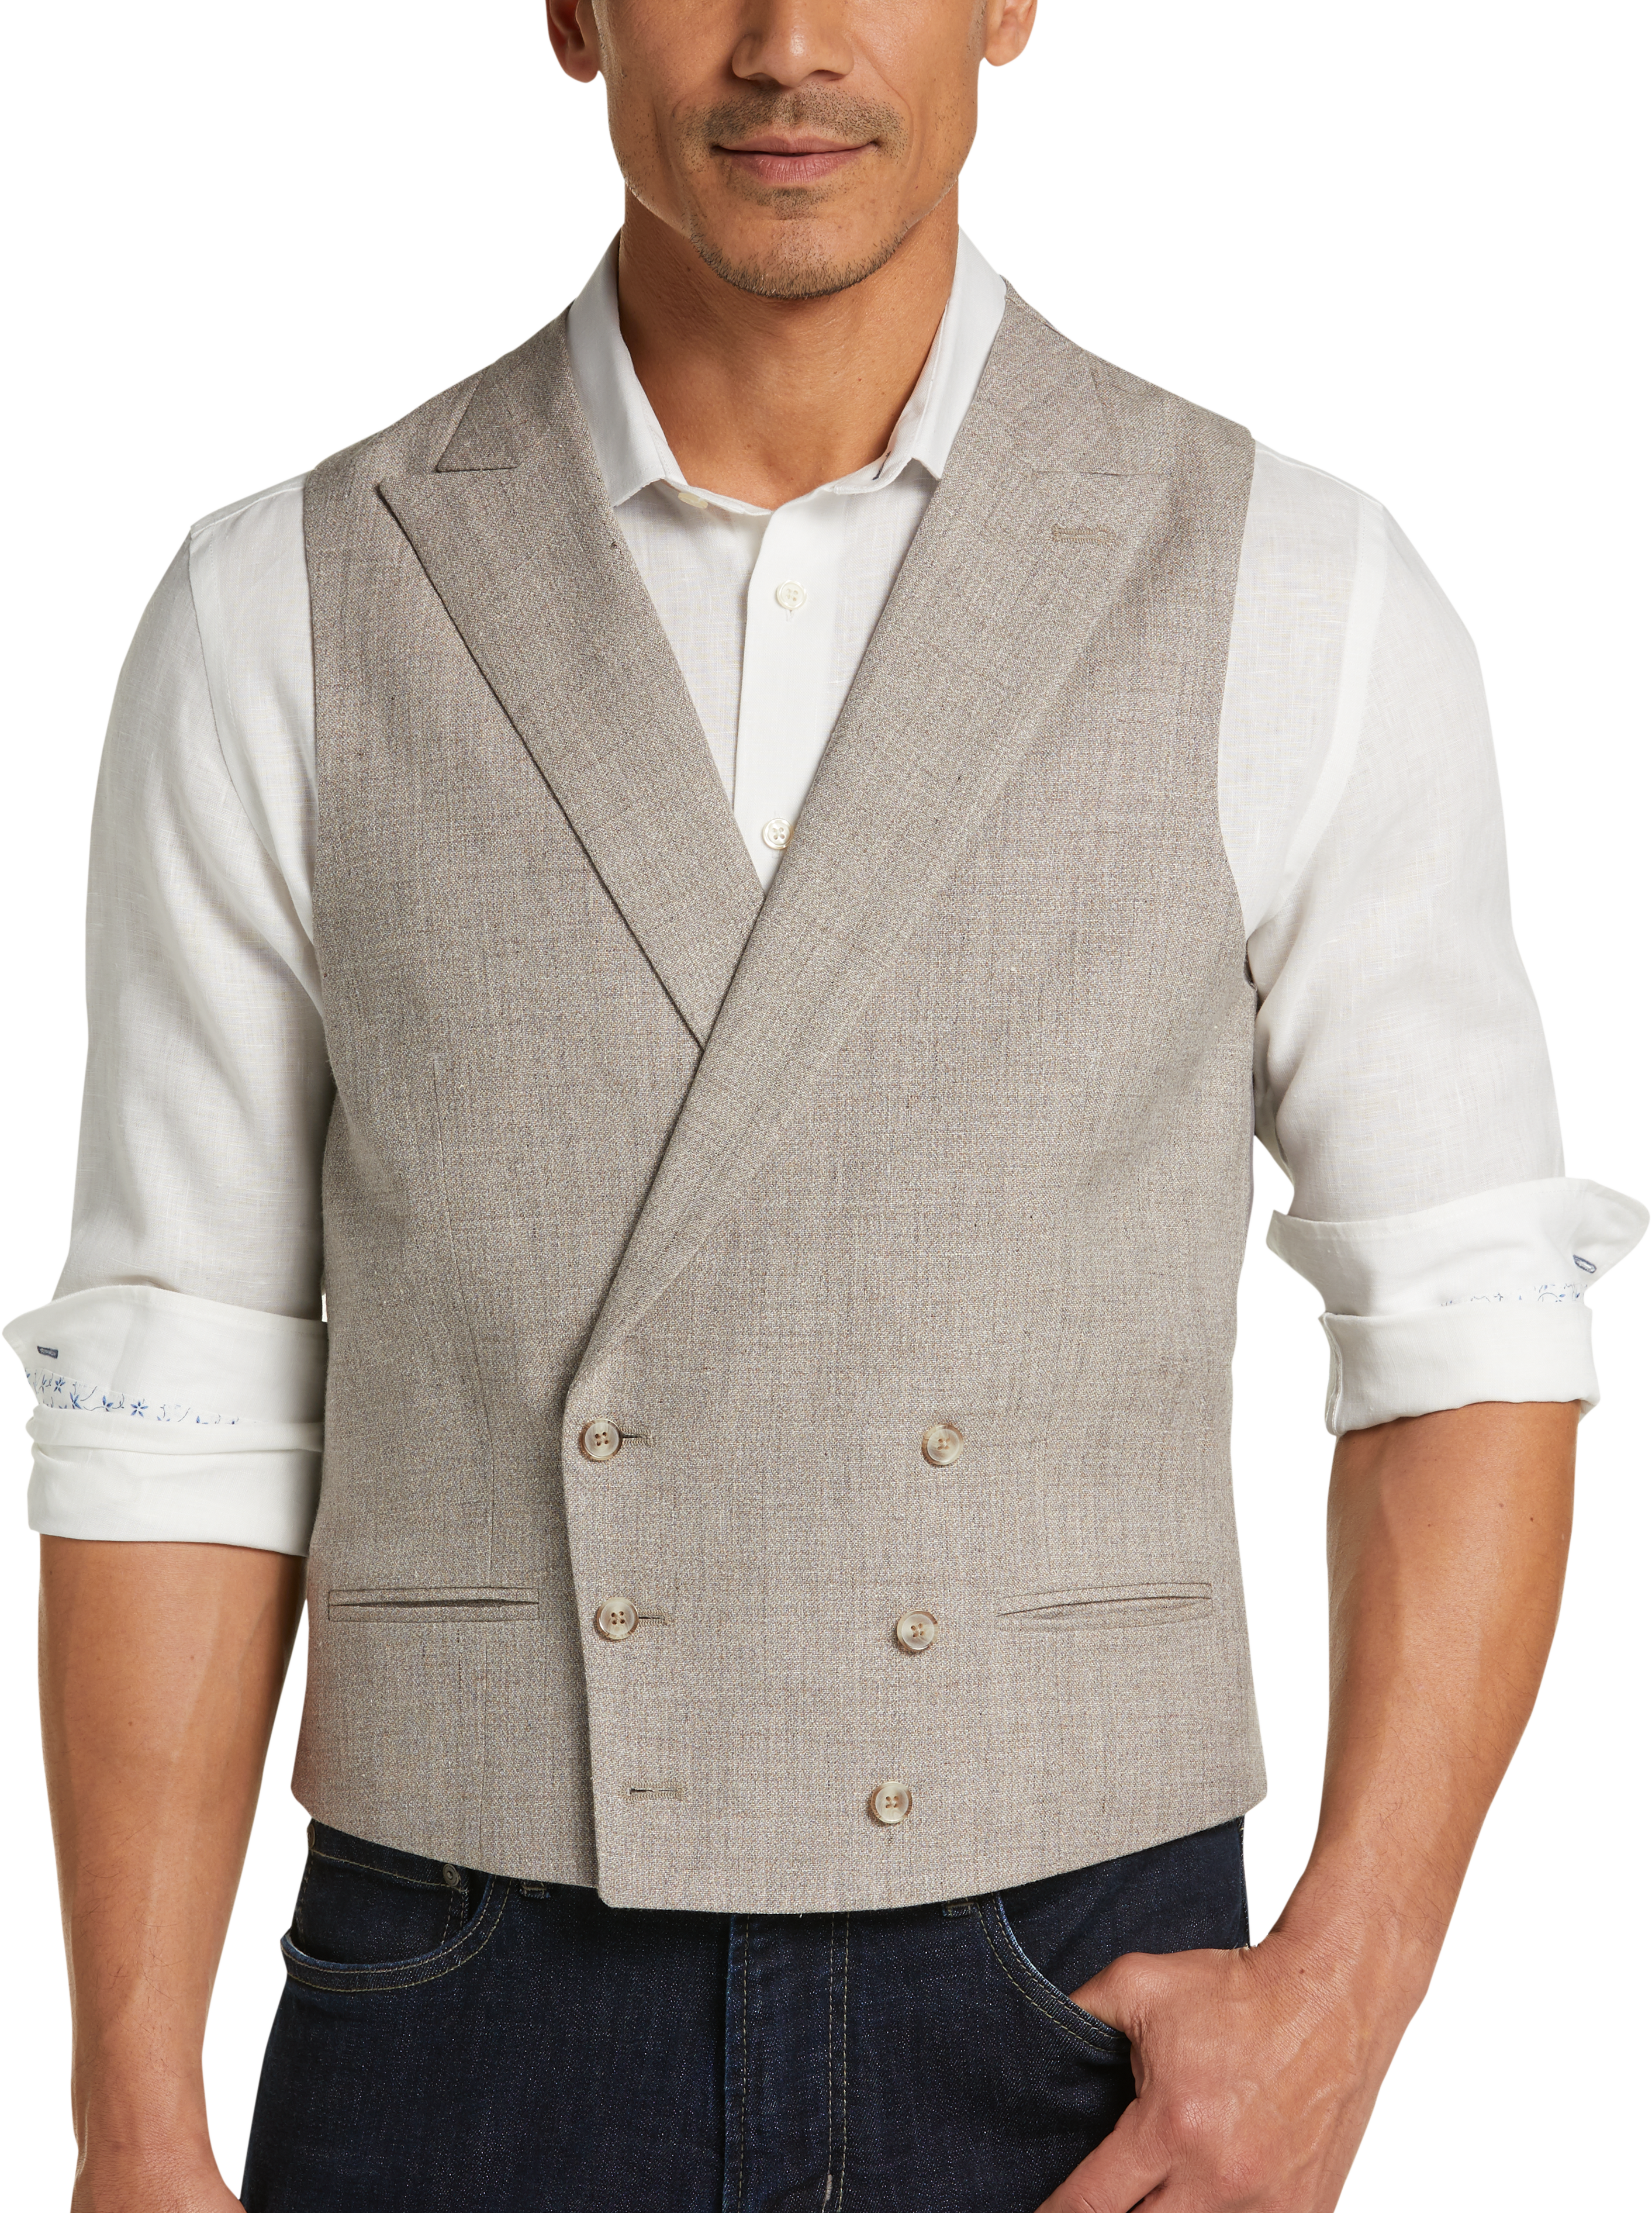 Joseph Abboud Taupe Modern Fit Suit Separates Vest - Men's Sale | Men's ...